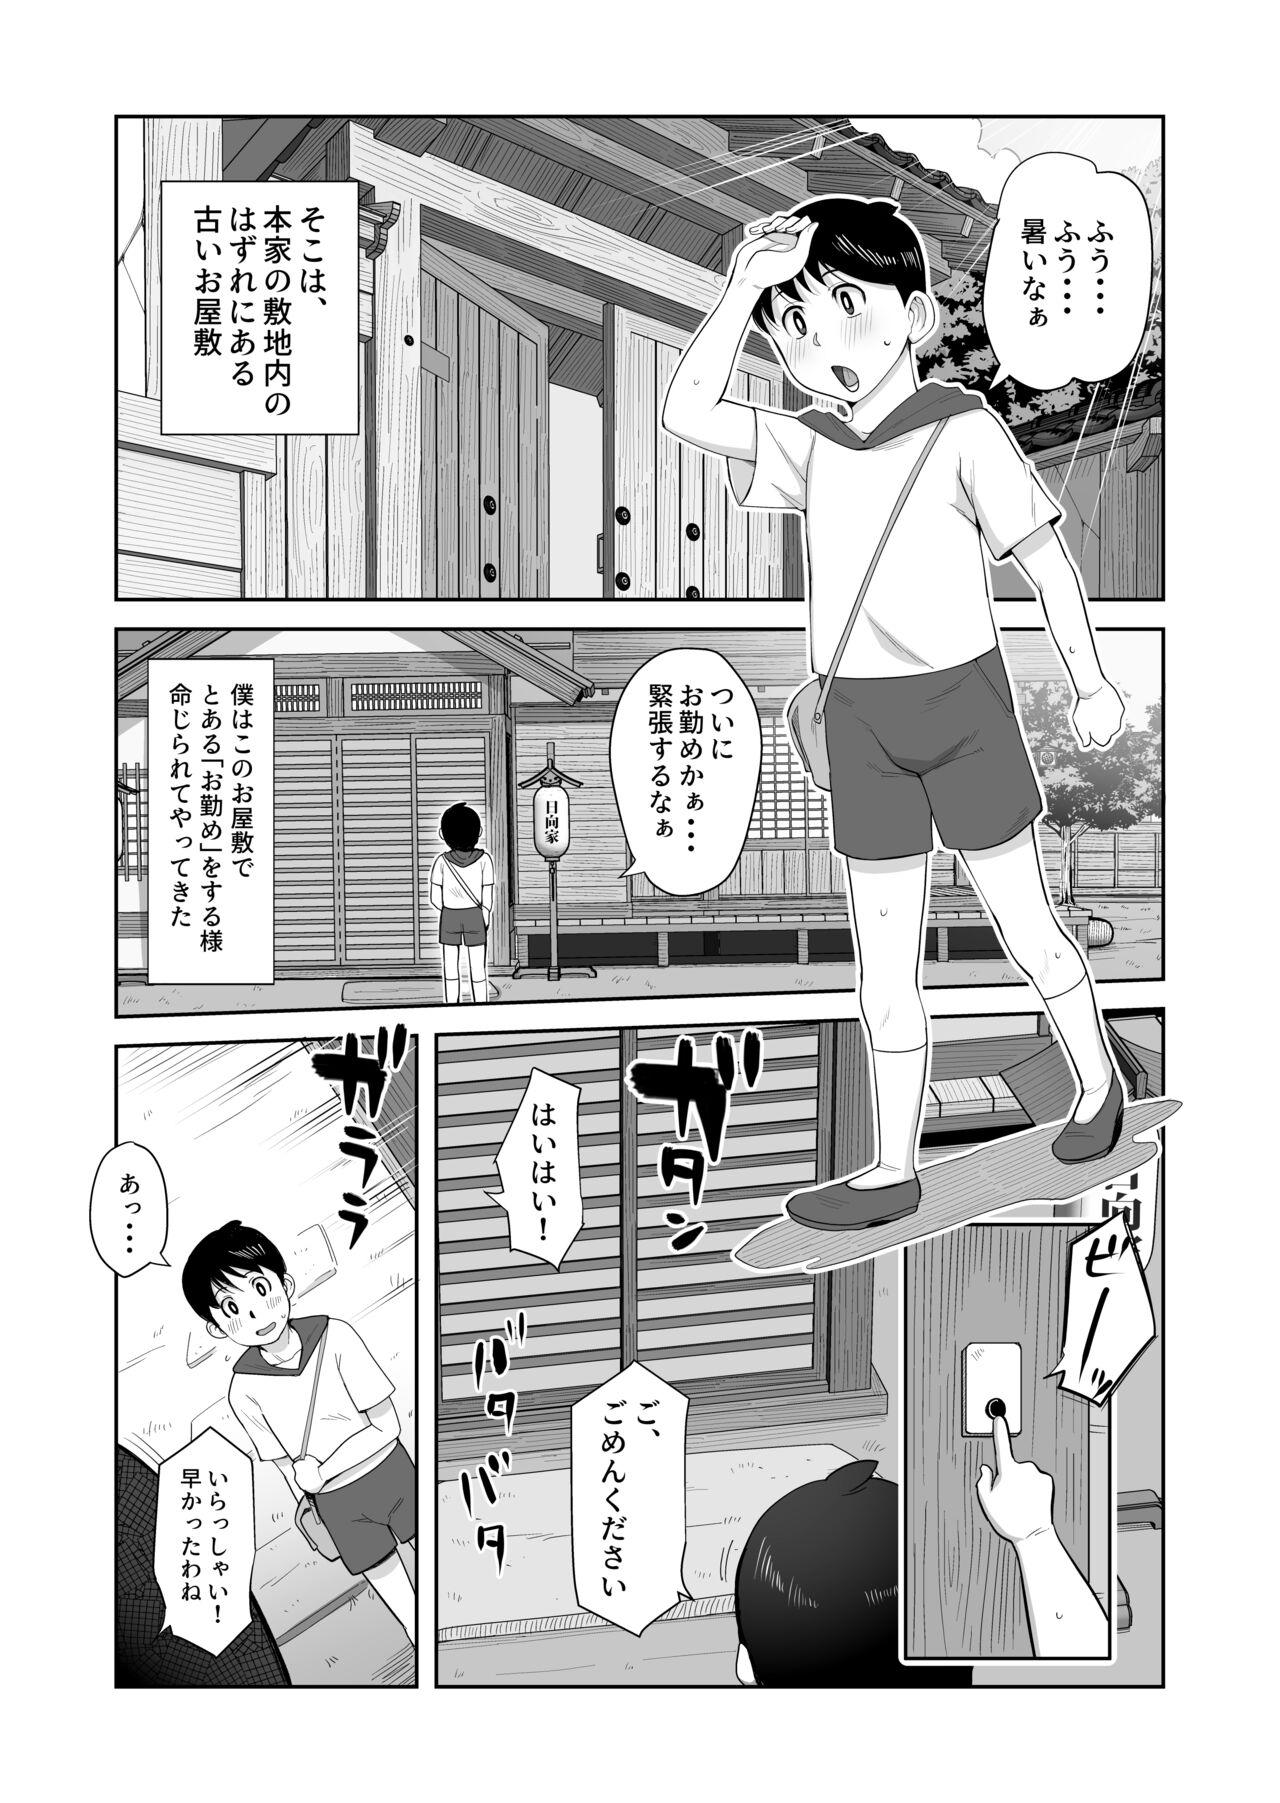 Grandpa [B-Kyuu Site (bkyu)] B-Kyuu Manga 12 Icnizoku no Shikitari 1-yame (Naruto) - Naruto Milk - Picture 3